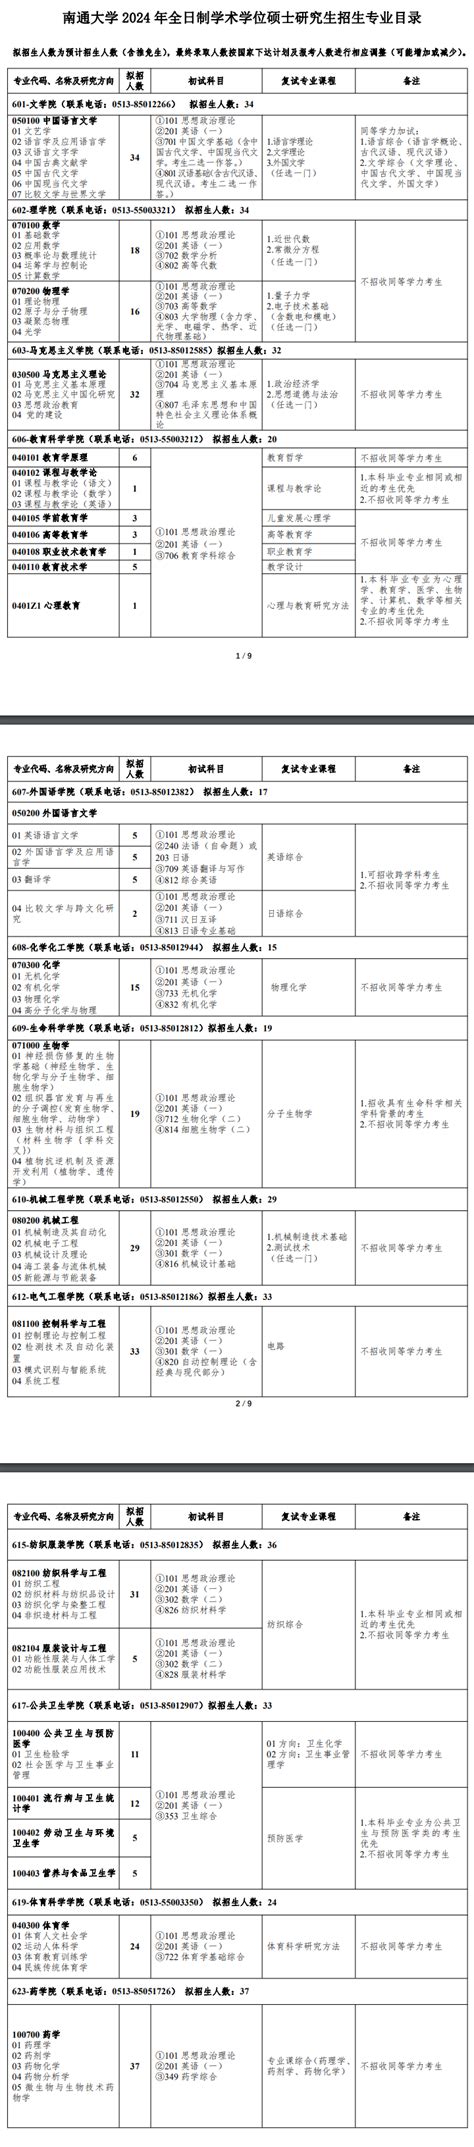 南通大学2021年依据台湾地区大学入学考试学科能力测试成绩招收台湾高中毕业生的招生简章